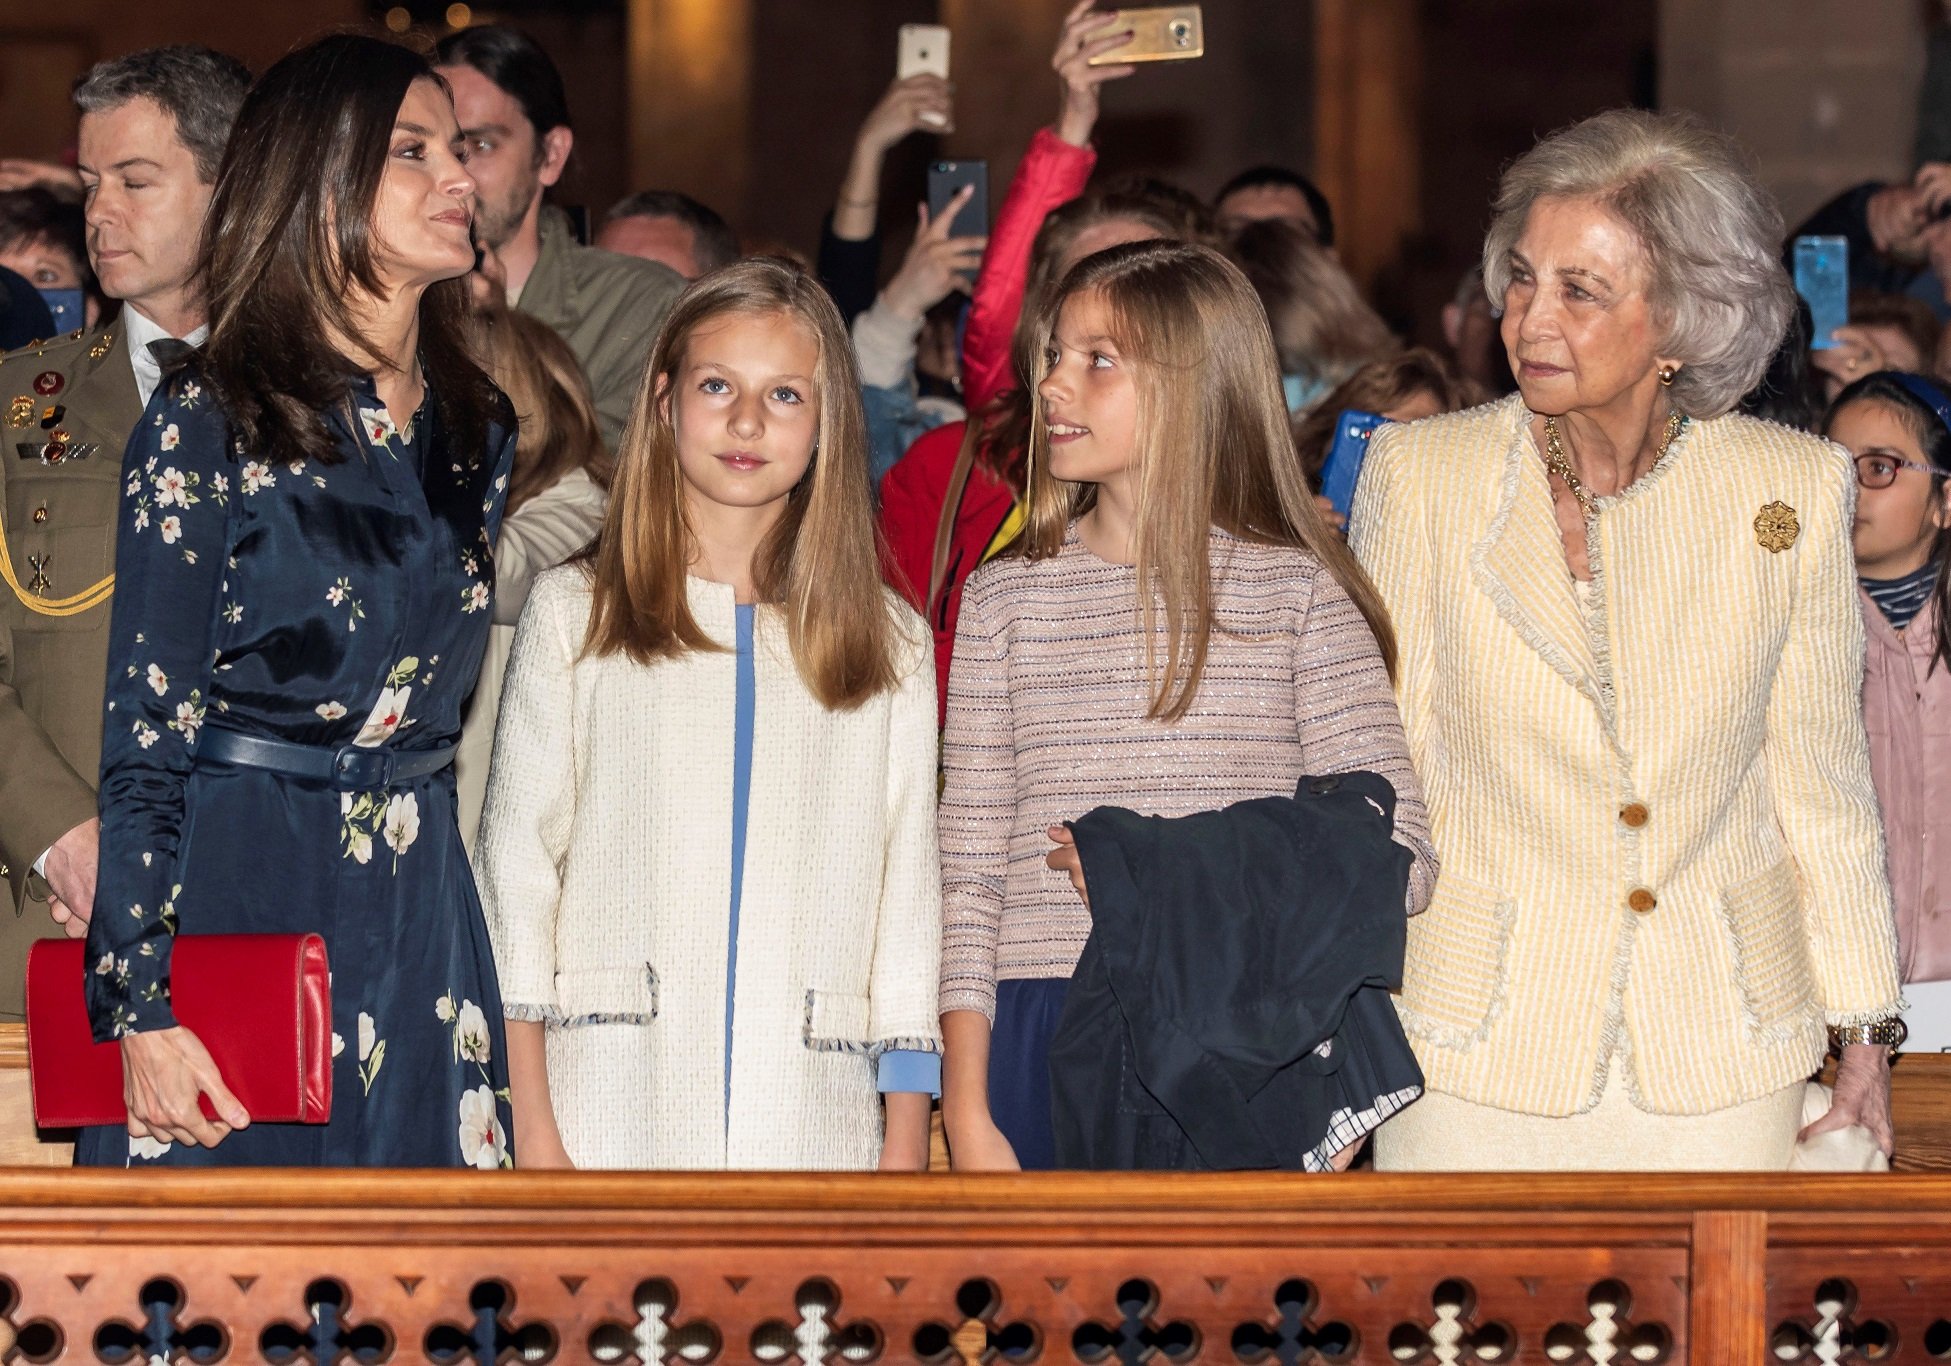 La Reina Letizia de España, la Princesa Leonor de España, la Princesa Sofía de España y la Reina Sofía de España en la misa de pascua de la Catedral de Palma de Mallorca en 2019. || Fuente: Getty Images